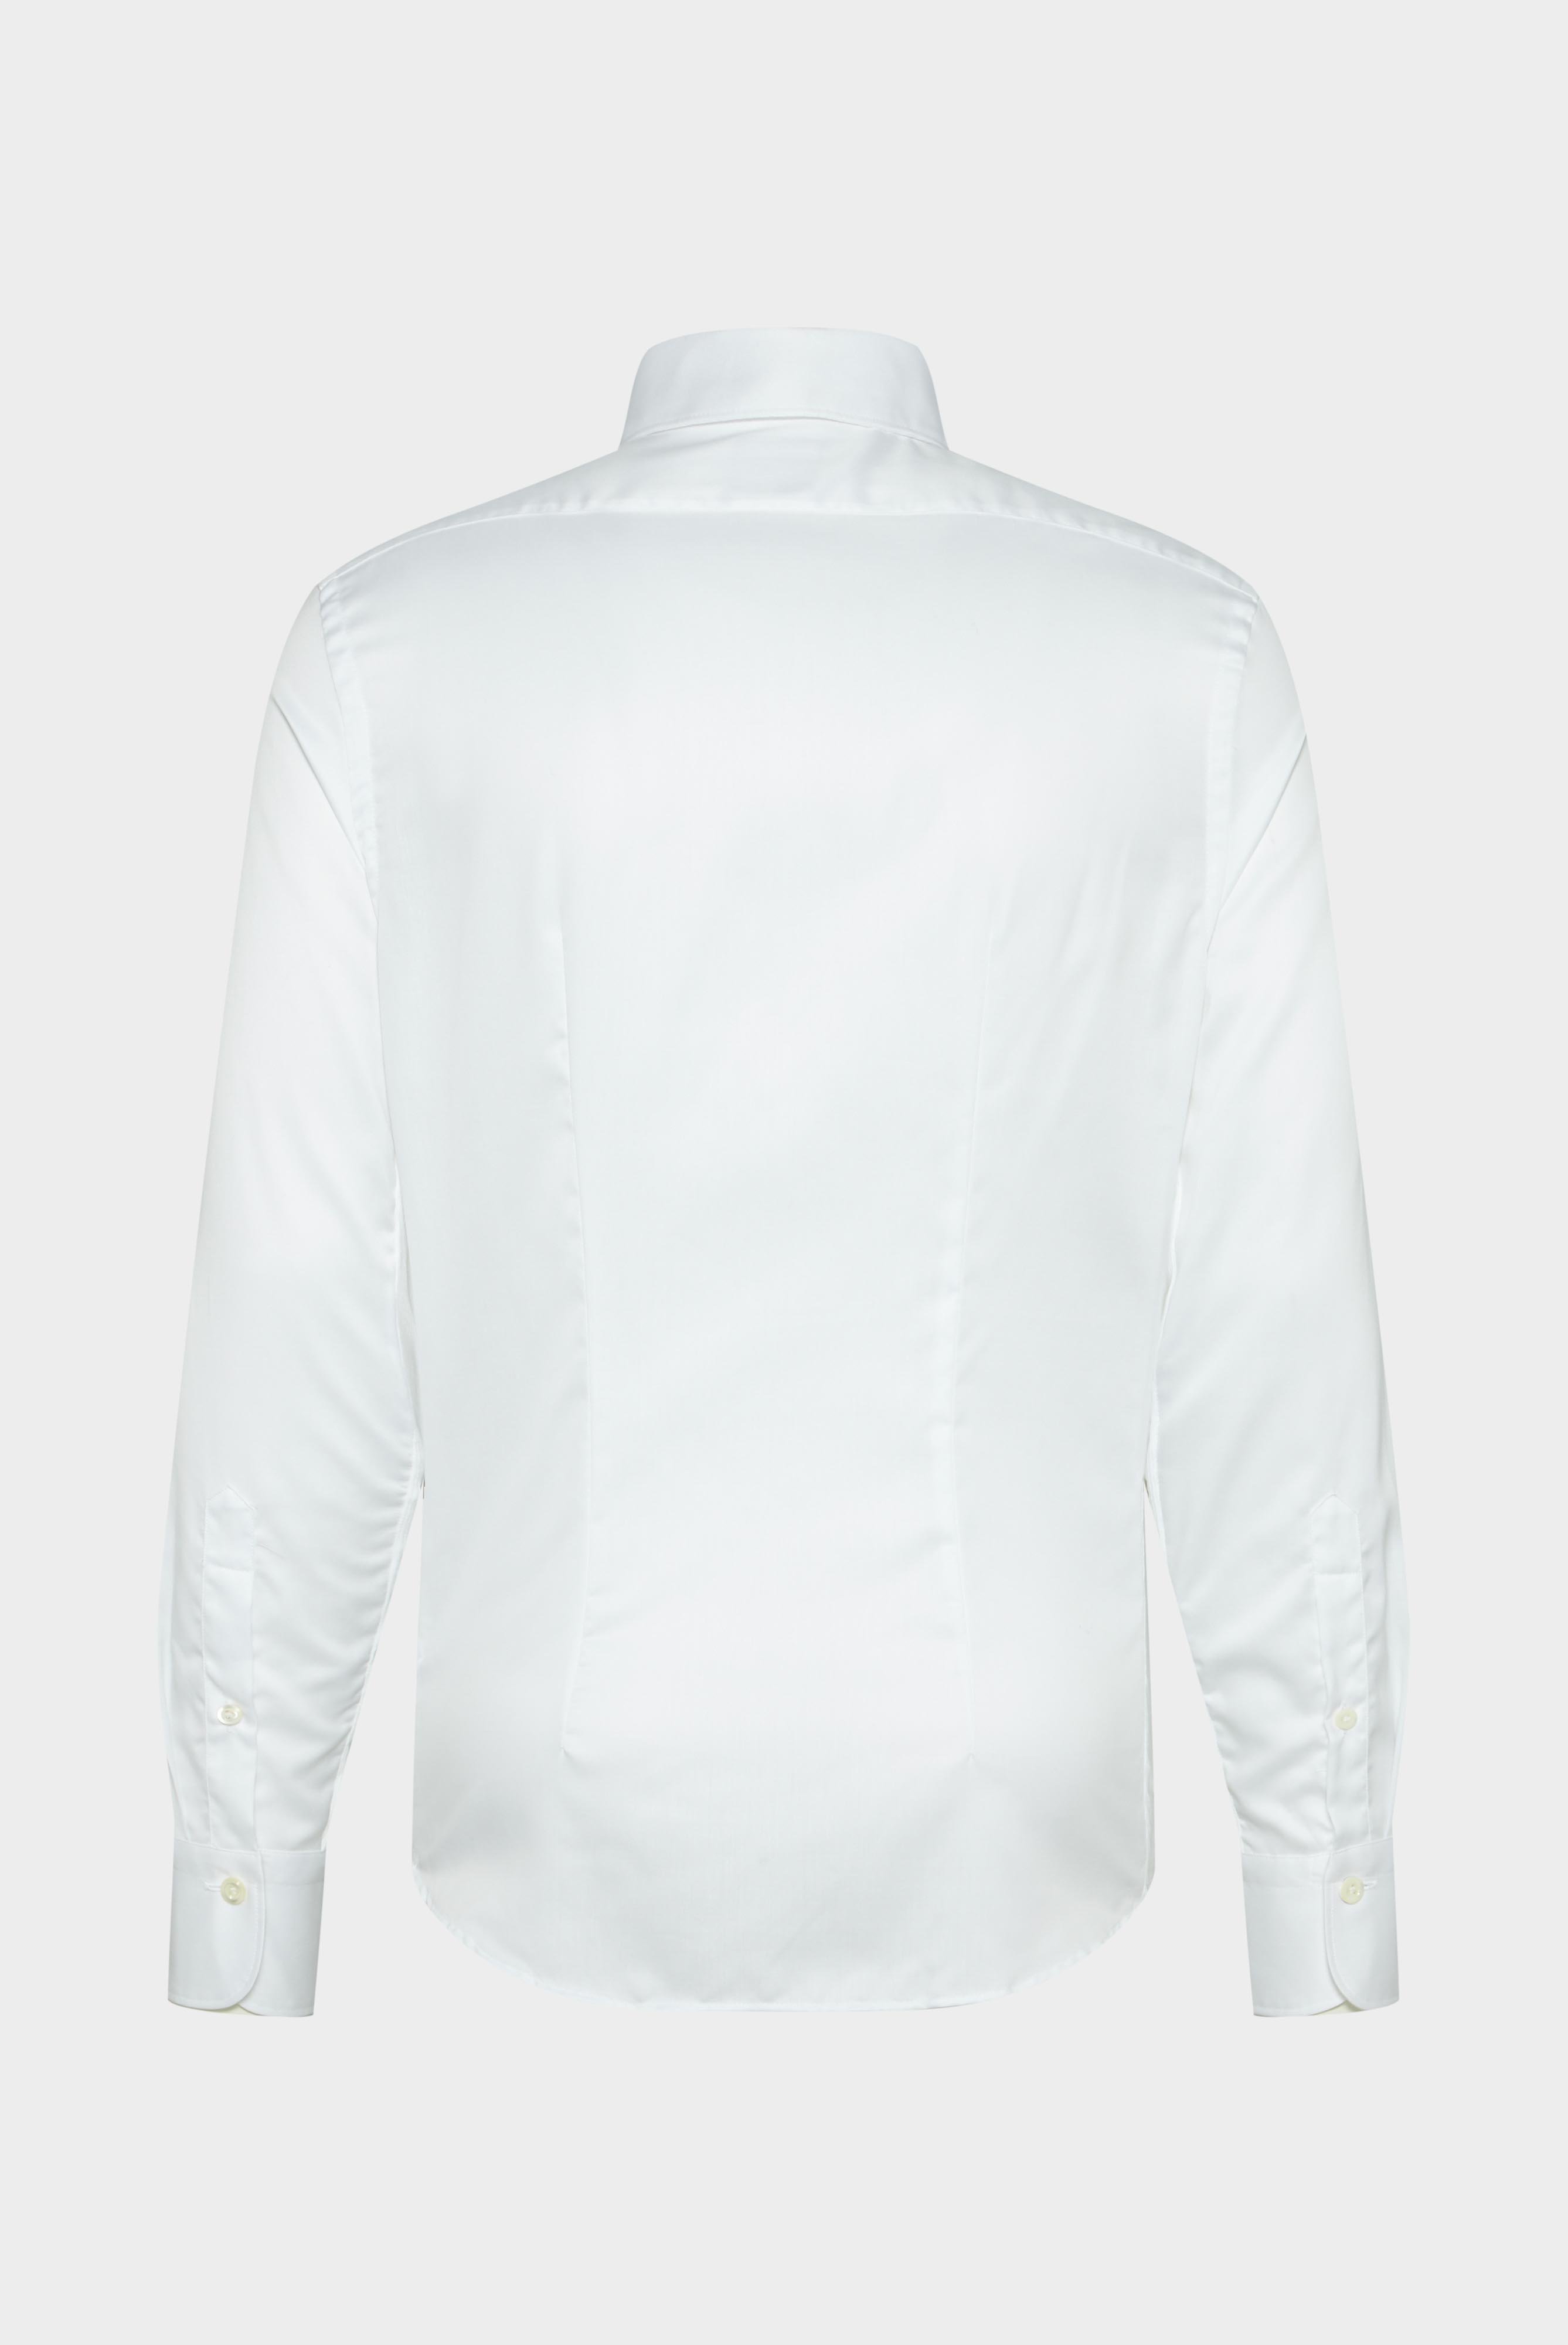 Bügelleichte Hemden+Bügelfreies Hybridshirt mit Jerseyeinsatz Slim Fit+20.2553.0F.132241.000.45